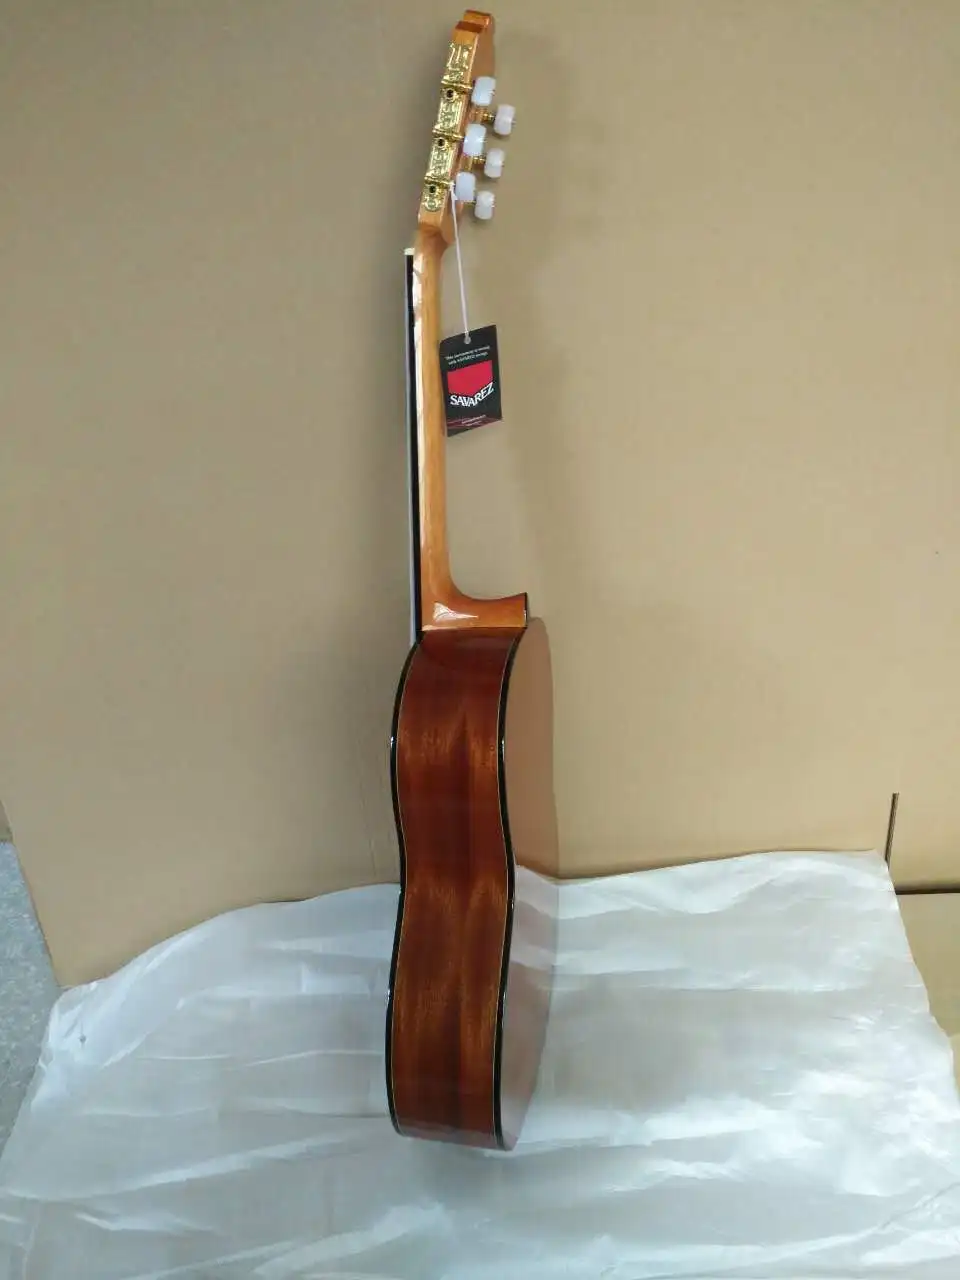 36 39 дюймов гитара, Акустическая классическая испанская гитара s с еловым верхом/корпусом из красного дерева, Классическая гитара с нейлоновой струной